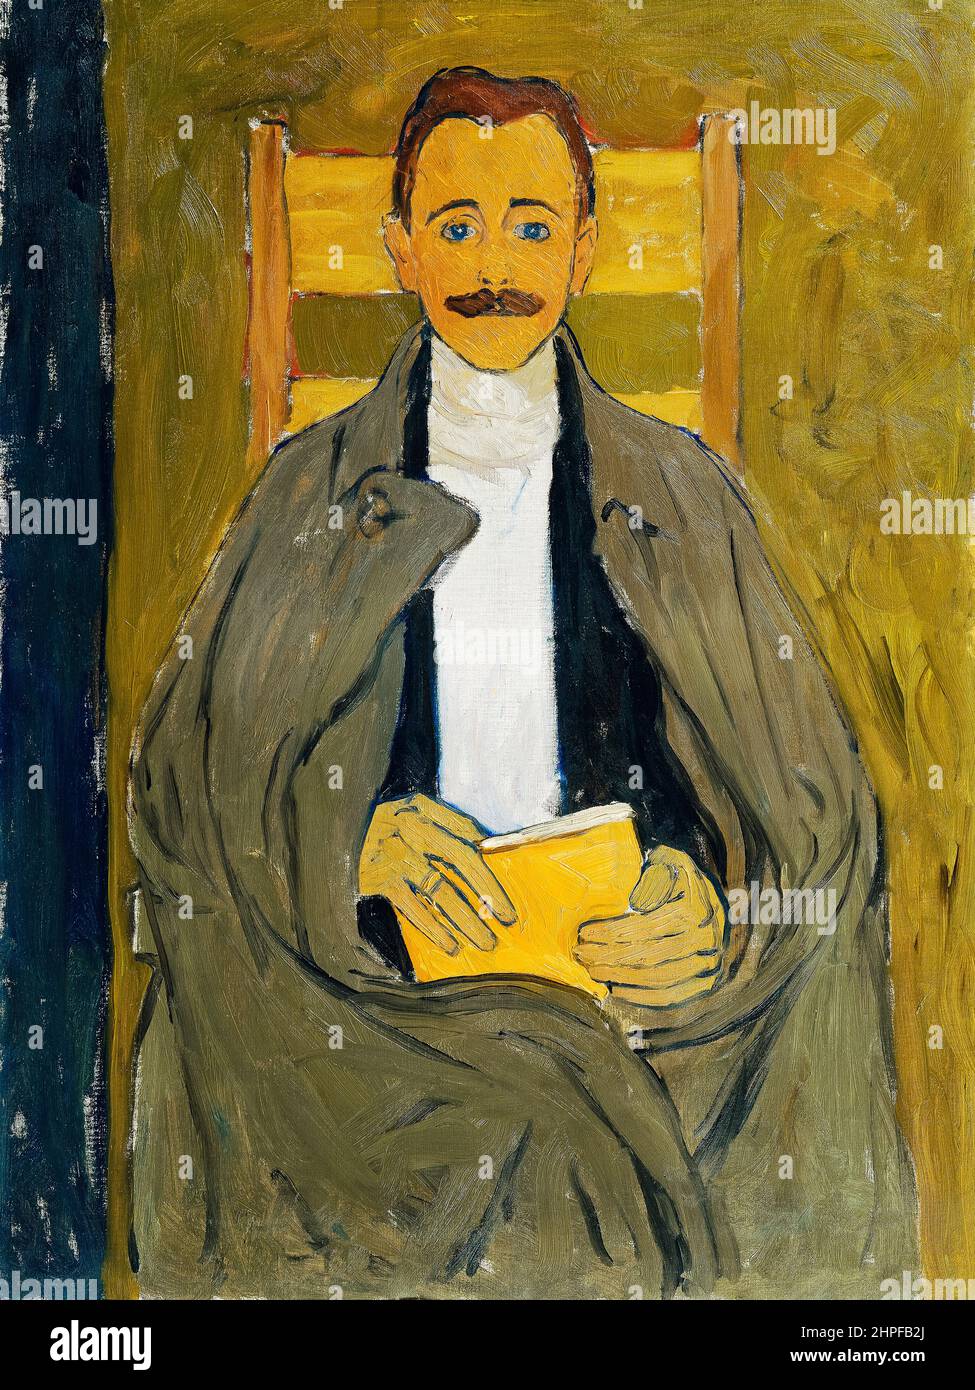 Rudolf Steindl, beau-frère de l'artiste, portrait peint à l'huile sur toile par Koloman Moser, vers 1910 Banque D'Images